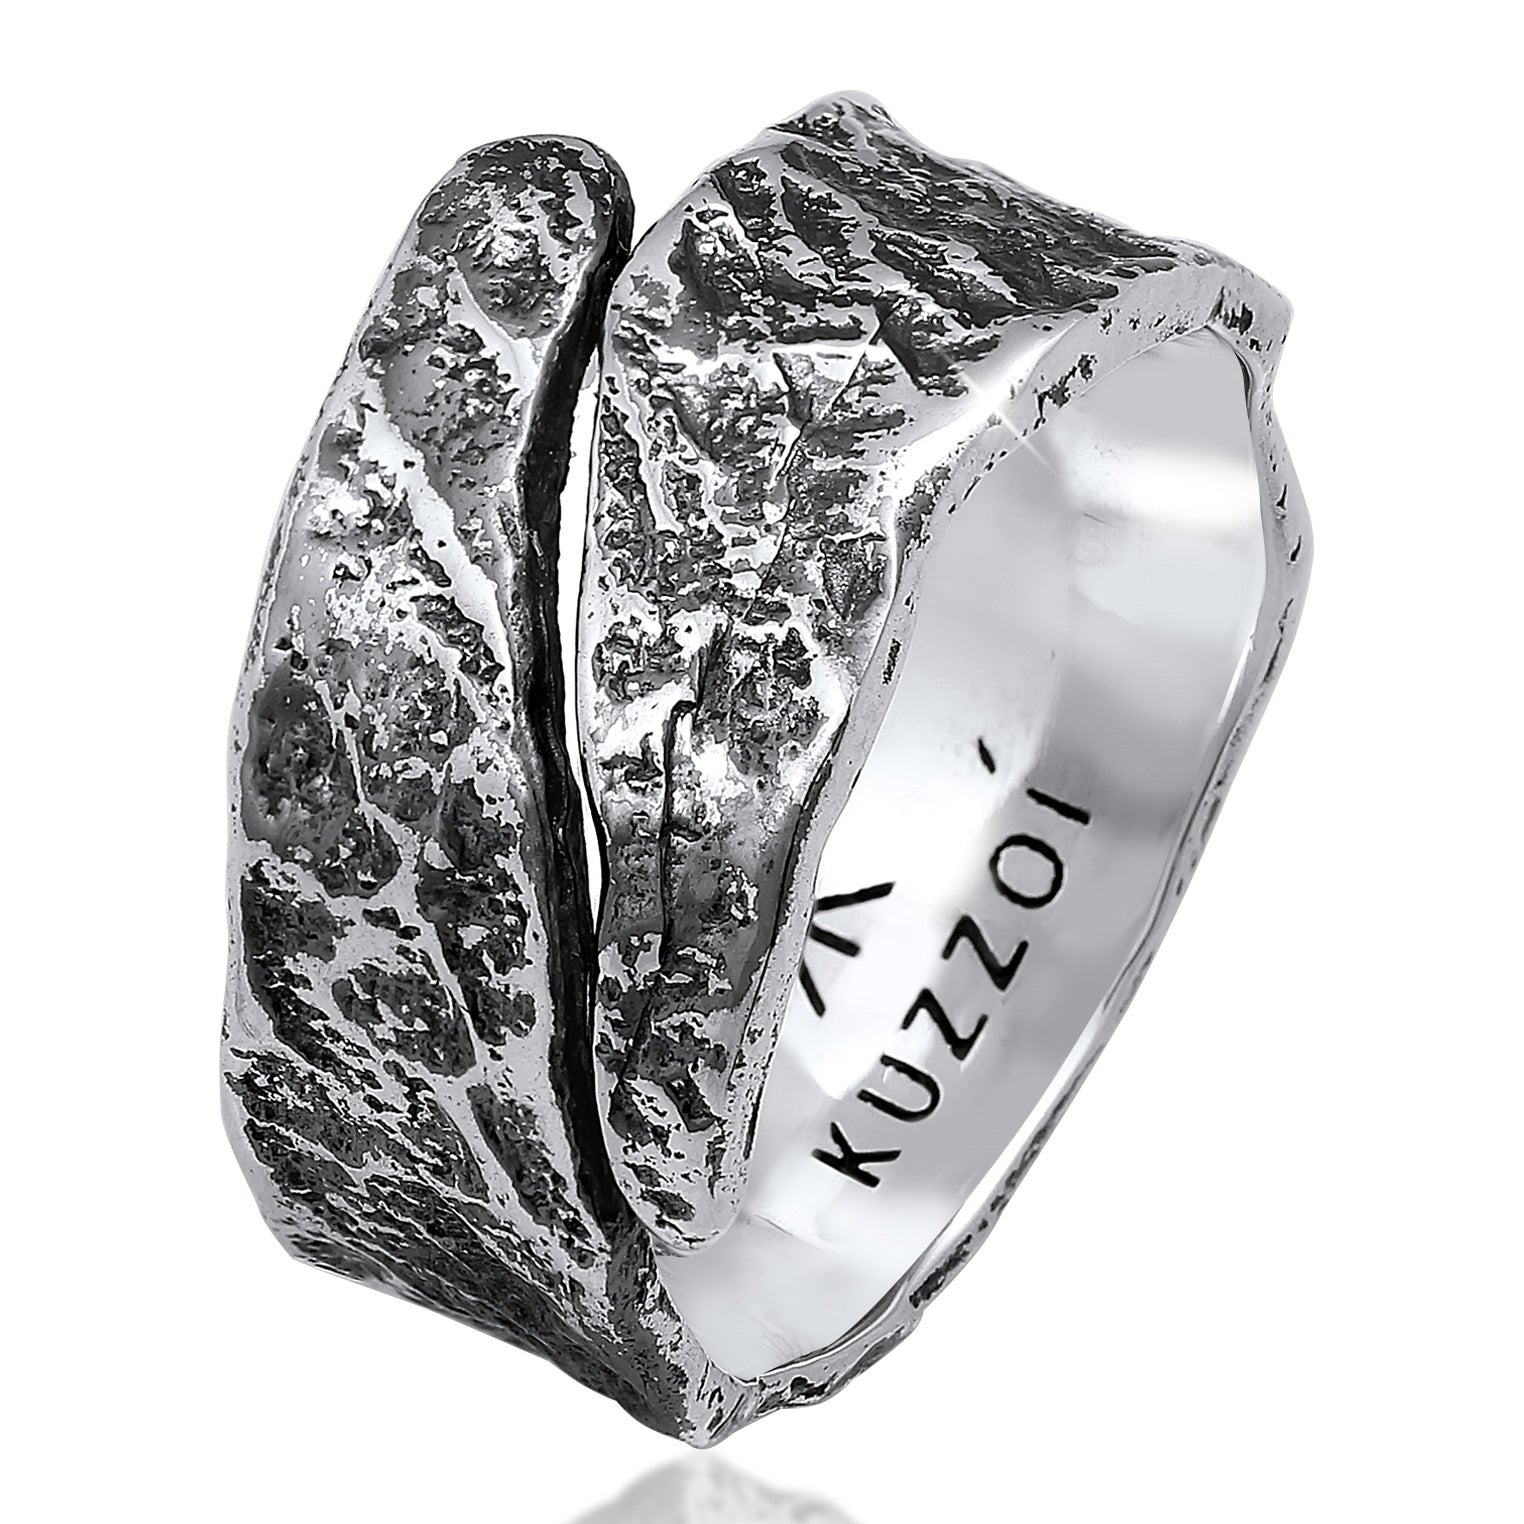 Men's Rings | signet ring | KUZZOI rings online at KUZZOI – Kuzzoi